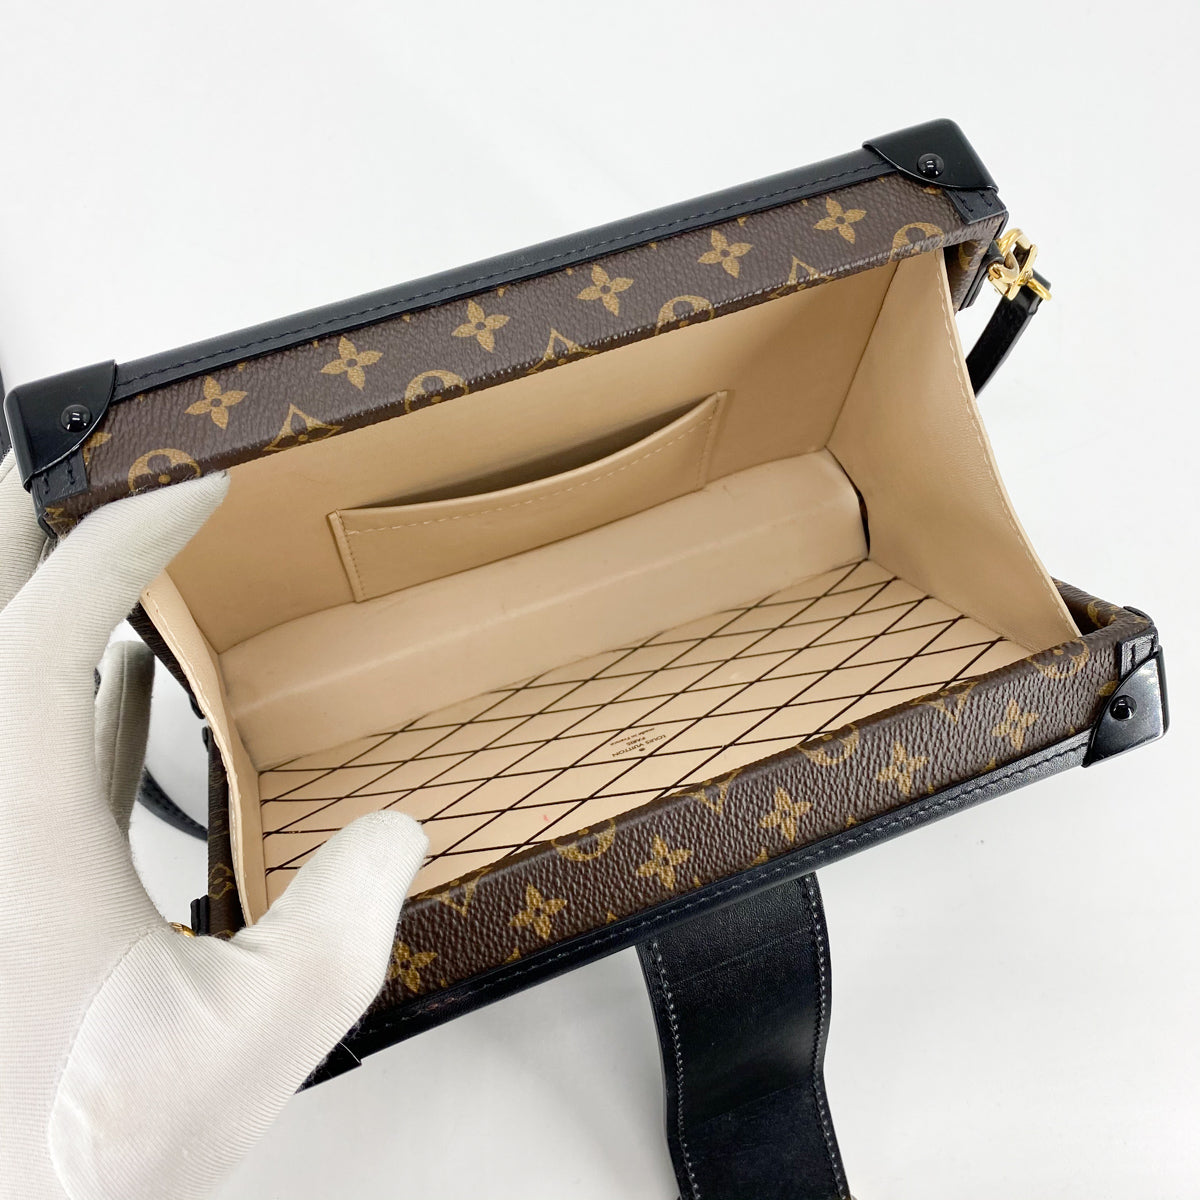 Shop Louis Vuitton Petite malle (M59605, M59710) by lifeisfun